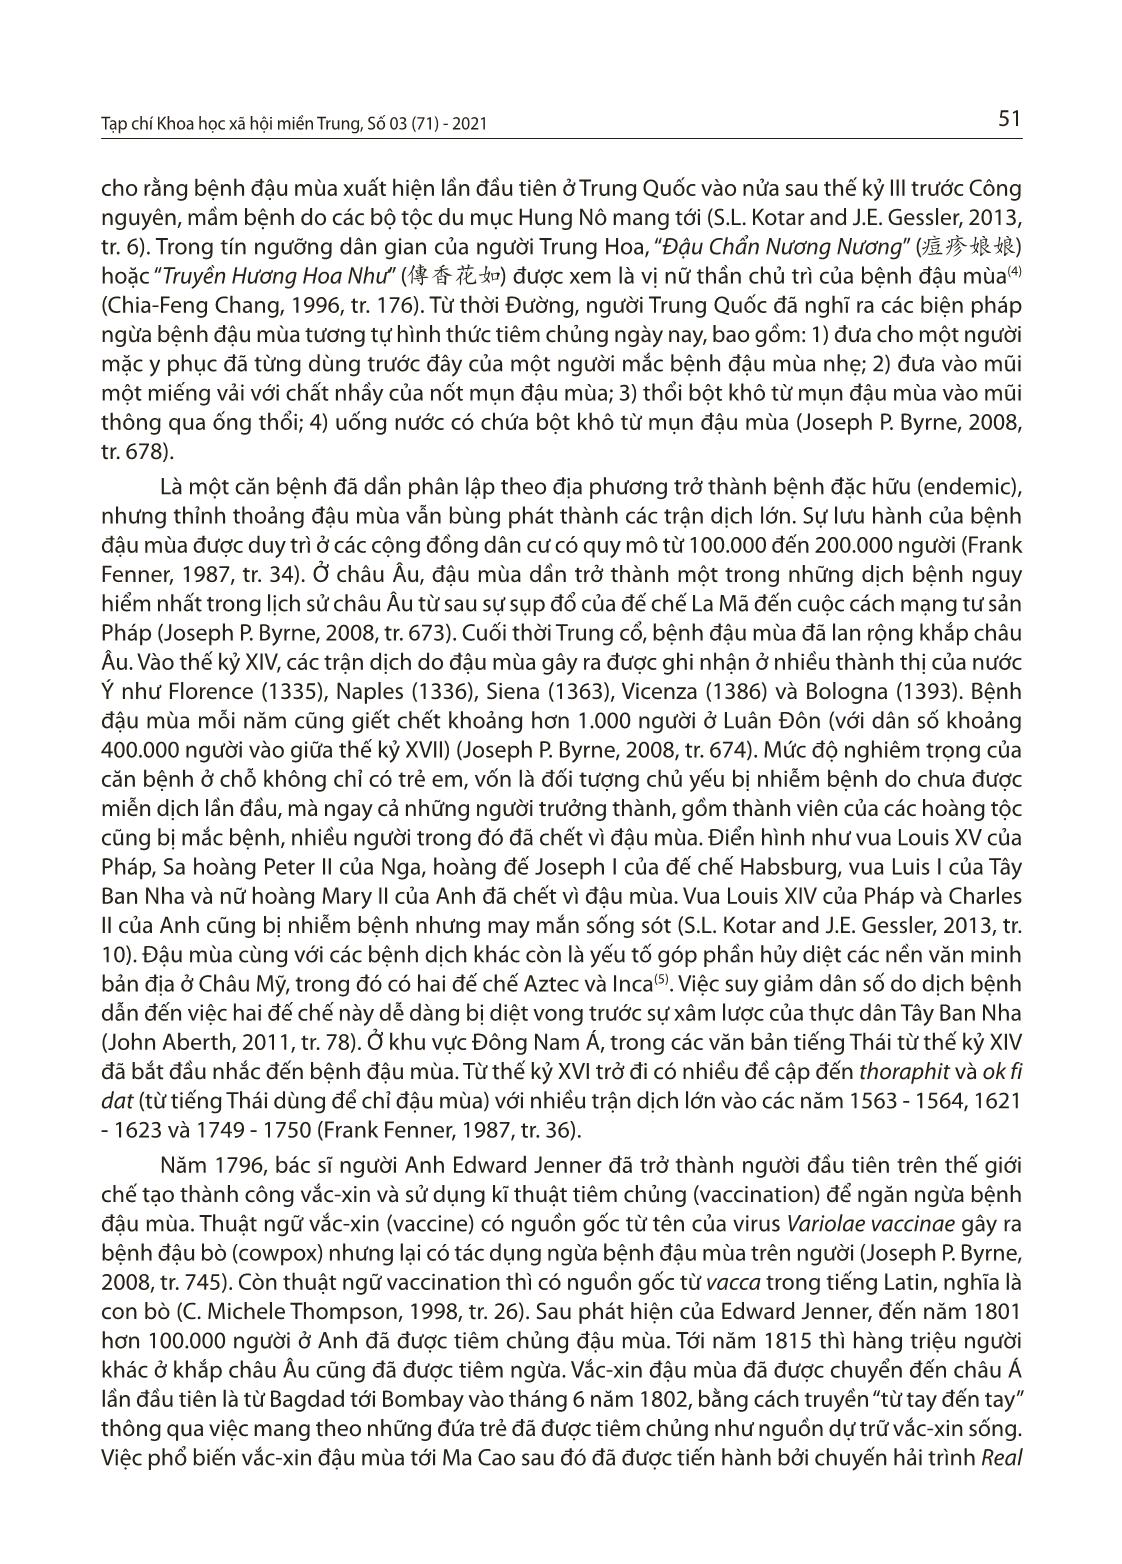 Bệnh đậu mùa ở Việt Nam thời Nguyễn và việc tiếp cận vắc-Xin đậu mùa của nhà Nguyễn vào đầu thế kỷ XIX trang 3